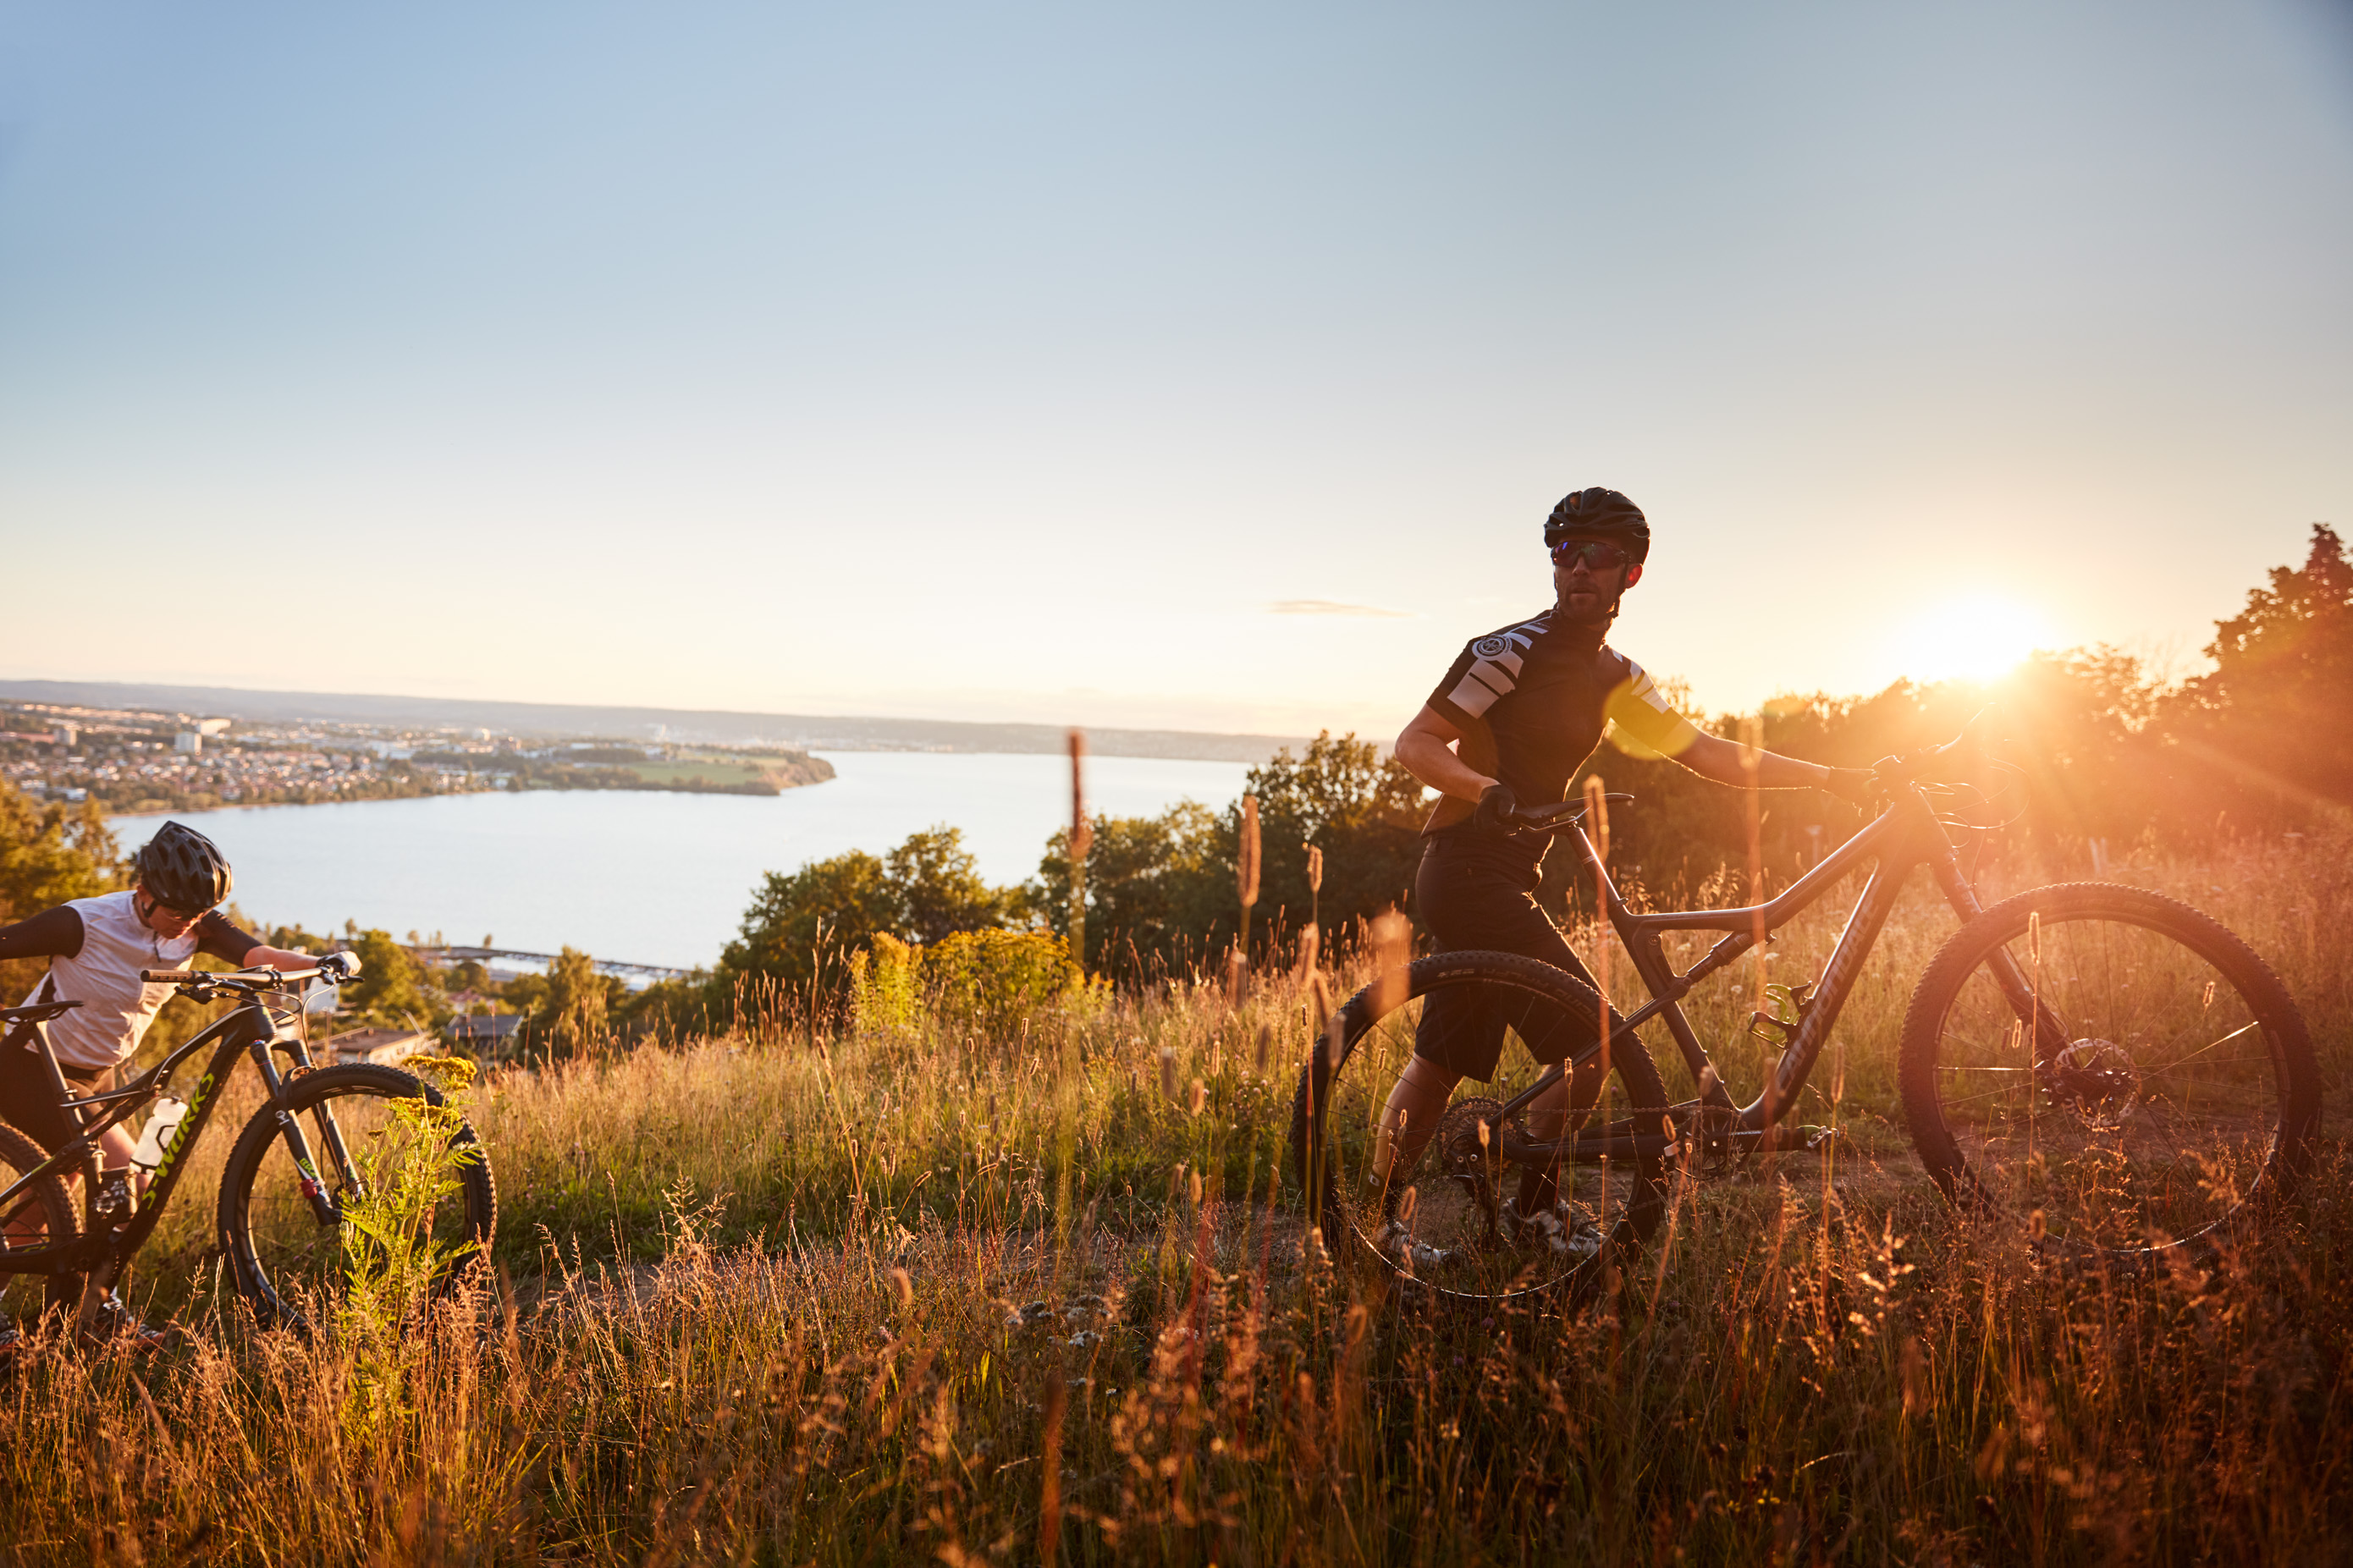 Visar två människor som leder sina cyklar uppför ett berg med utsikt över en sjö i solnedgång.